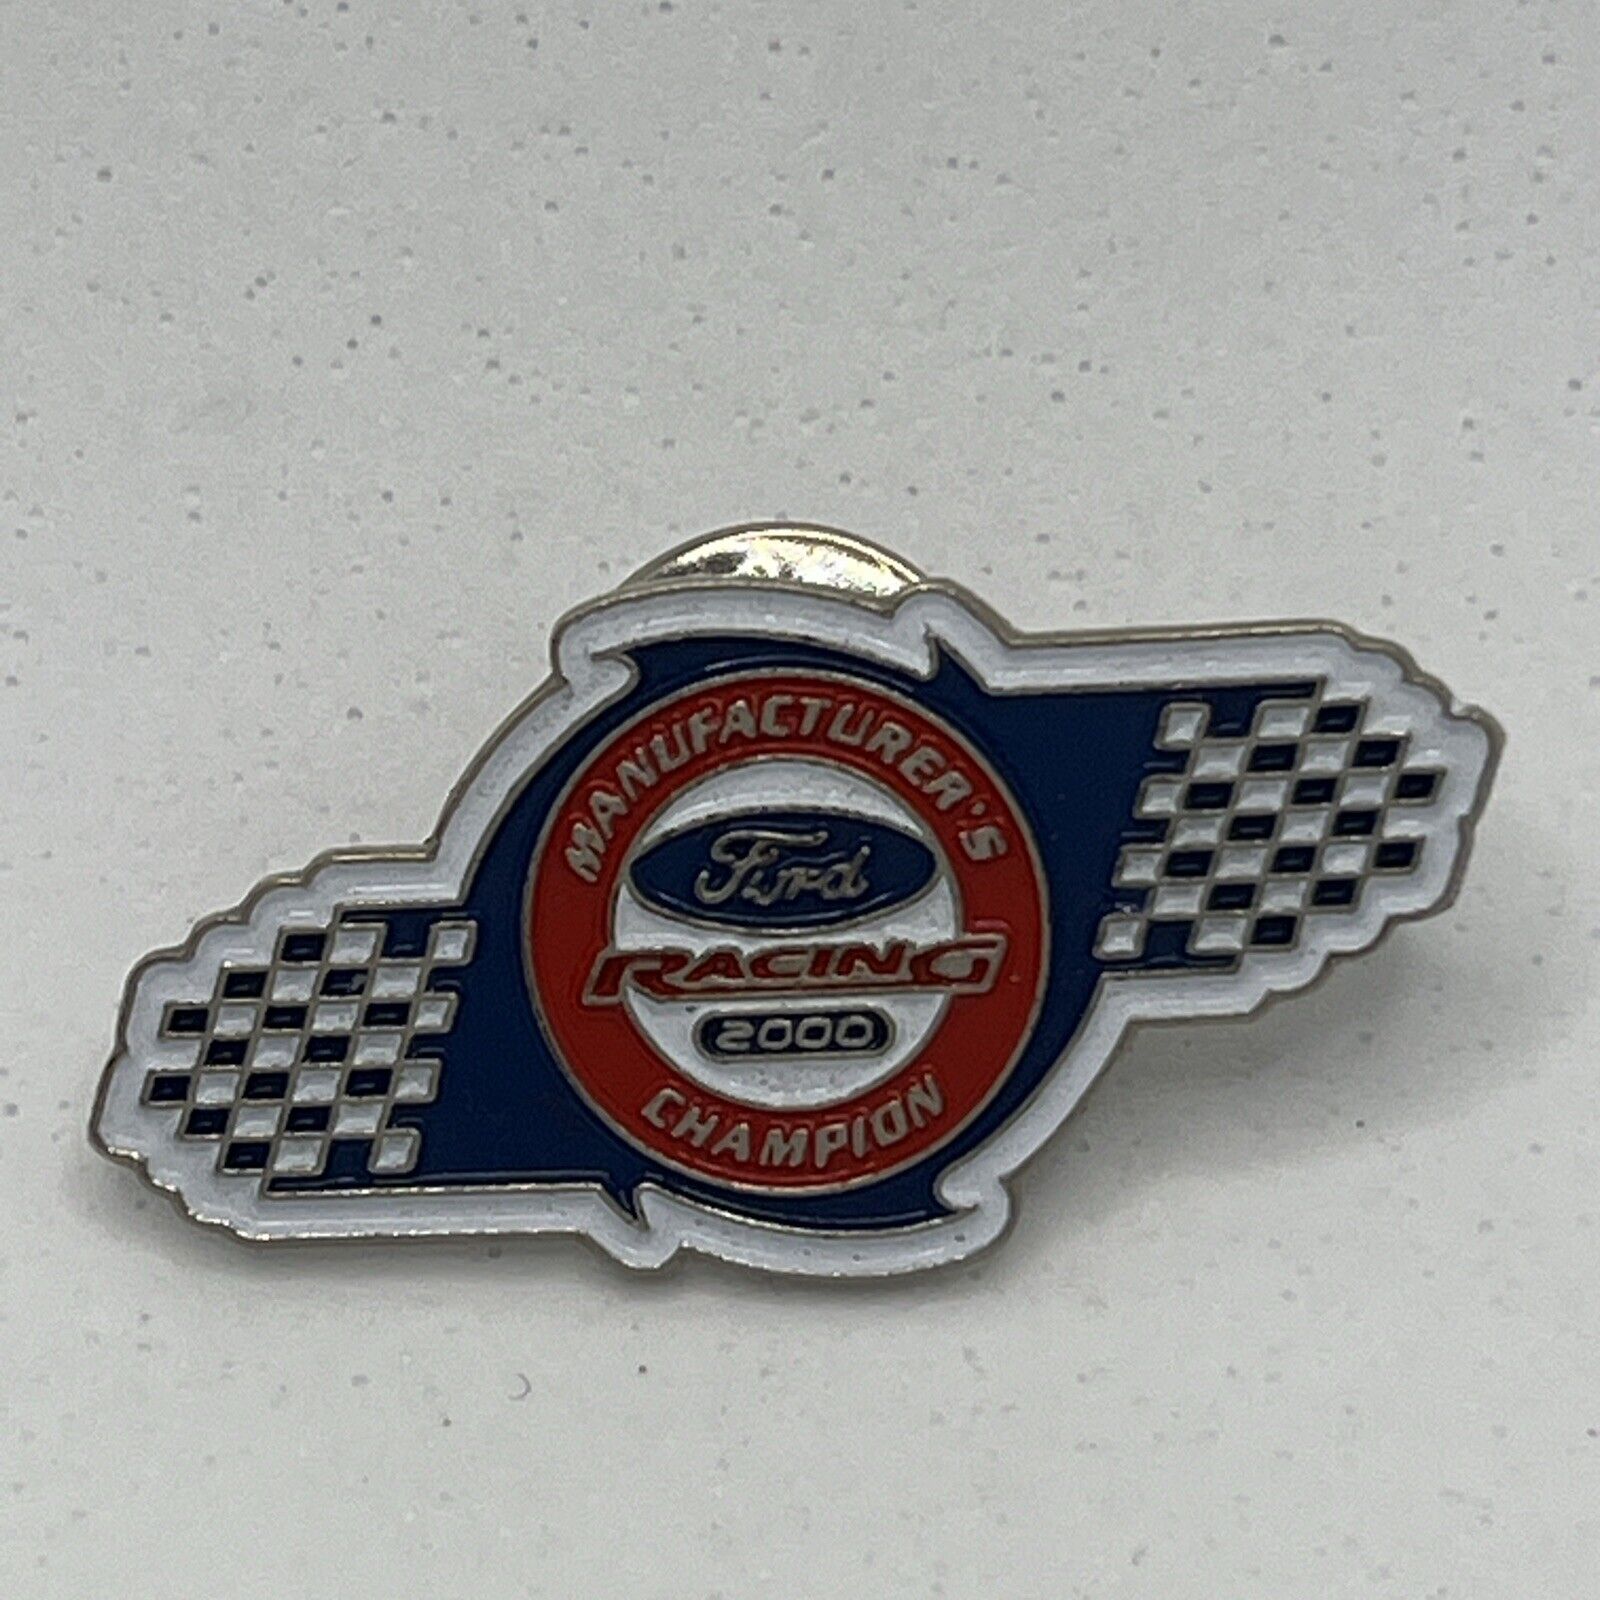 Ford Motorsport 2000 Manufacturers Champion Car Enamel Lapel Hat Pin Pinback